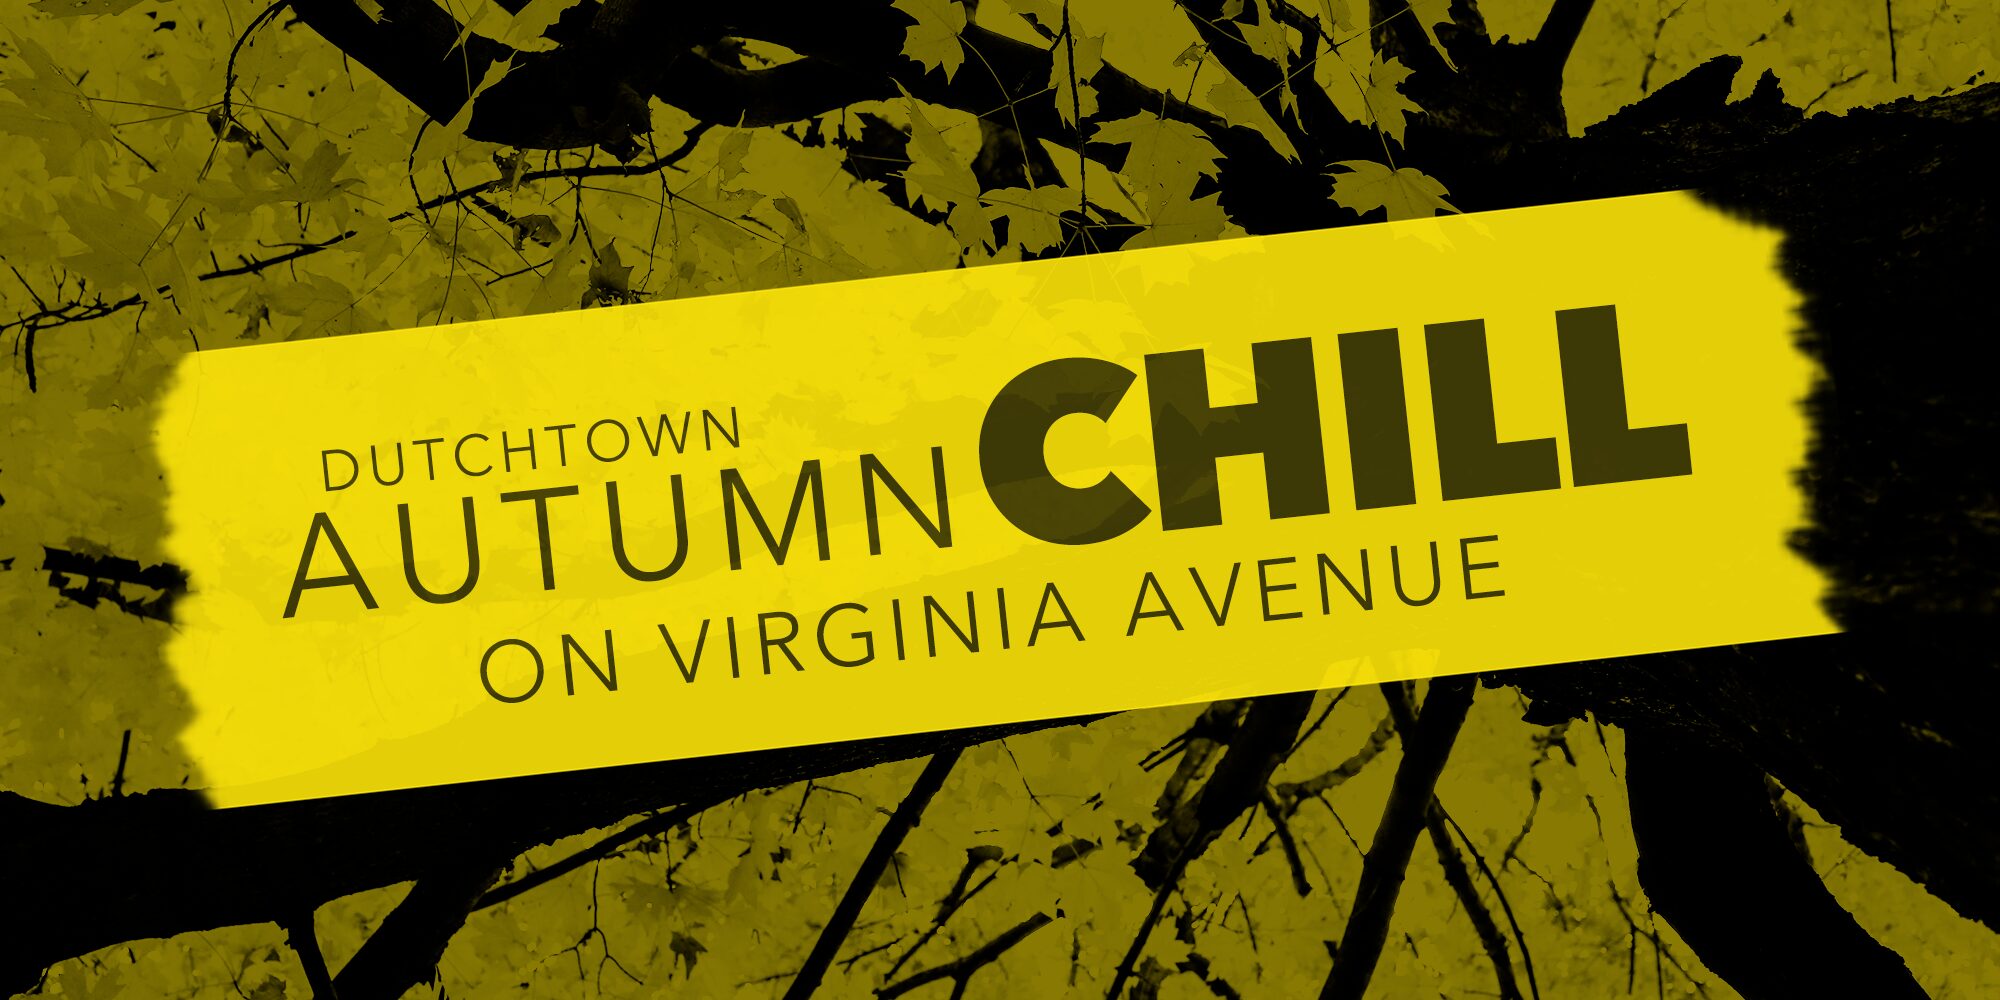 Dutchtown Autumn Chill on Virginia Avenue